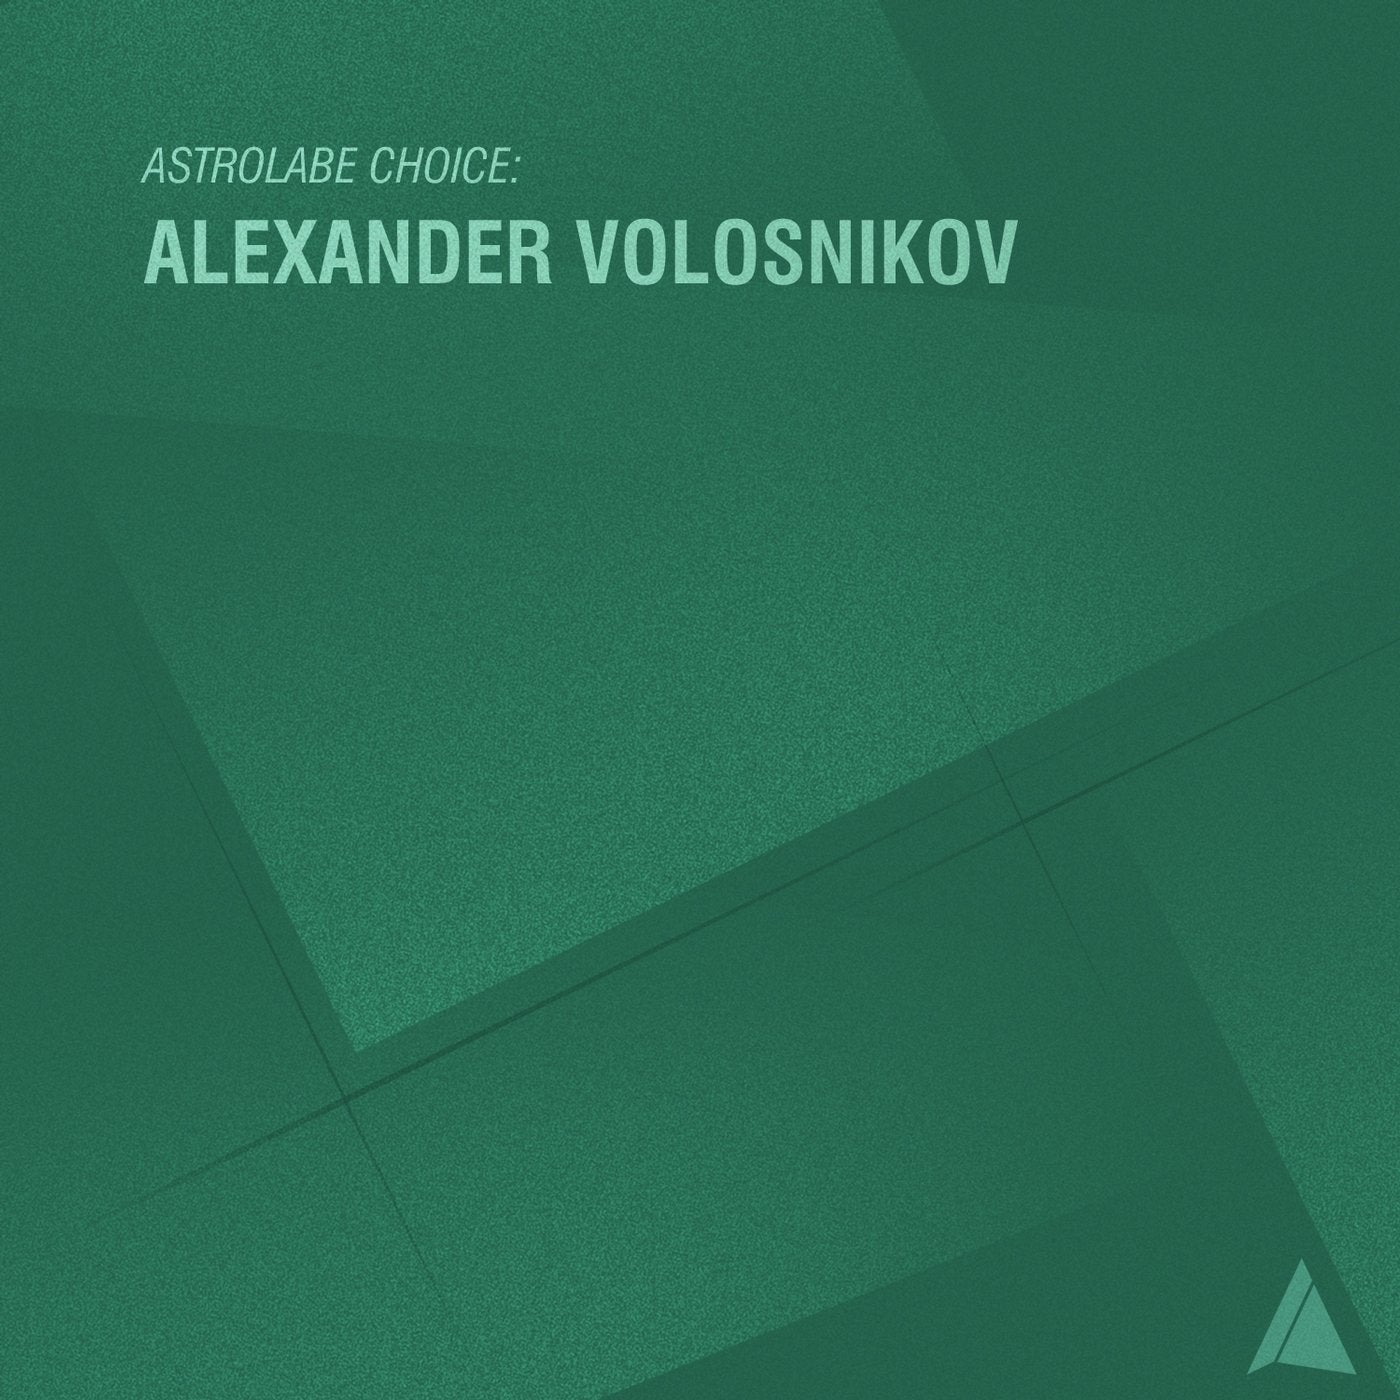 Astrolabe Choice: Alexander Volosnikov